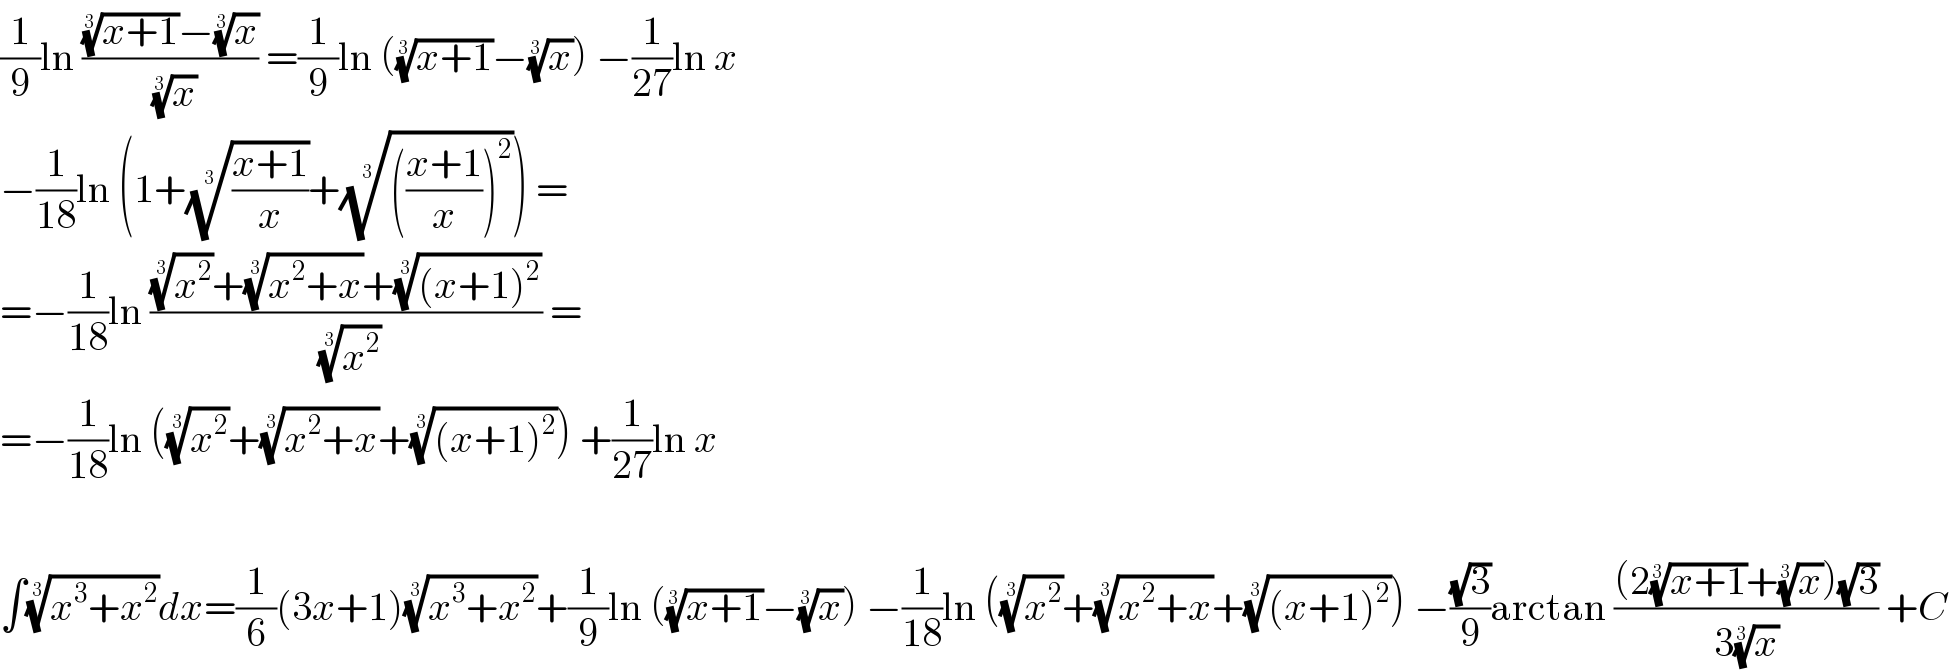 (1/9)ln ((((x+1))^(1/3) −(x)^(1/3) )/(x)^(1/3) ) =(1/9)ln (((x+1))^(1/3) −(x)^(1/3) ) −(1/(27))ln x  −(1/(18))ln (1+(((x+1)/x))^(1/3) +(((((x+1)/x))^2 ))^(1/3) ) =  =−(1/(18))ln (((x^2 )^(1/3) +((x^2 +x))^(1/3) +(((x+1)^2 ))^(1/3) )/(x^2 )^(1/3) ) =  =−(1/(18))ln ((x^2 )^(1/3) +((x^2 +x))^(1/3) +(((x+1)^2 ))^(1/3) ) +(1/(27))ln x    ∫((x^3 +x^2 ))^(1/3) dx=(1/6)(3x+1)((x^3 +x^2 ))^(1/3) +(1/9)ln (((x+1))^(1/3) −(x)^(1/3) ) −(1/(18))ln ((x^2 )^(1/3) +((x^2 +x))^(1/3) +(((x+1)^2 ))^(1/3) ) −((√3)/9)arctan (((2((x+1))^(1/3) +(x)^(1/3) )(√3))/(3(x)^(1/3) )) +C  